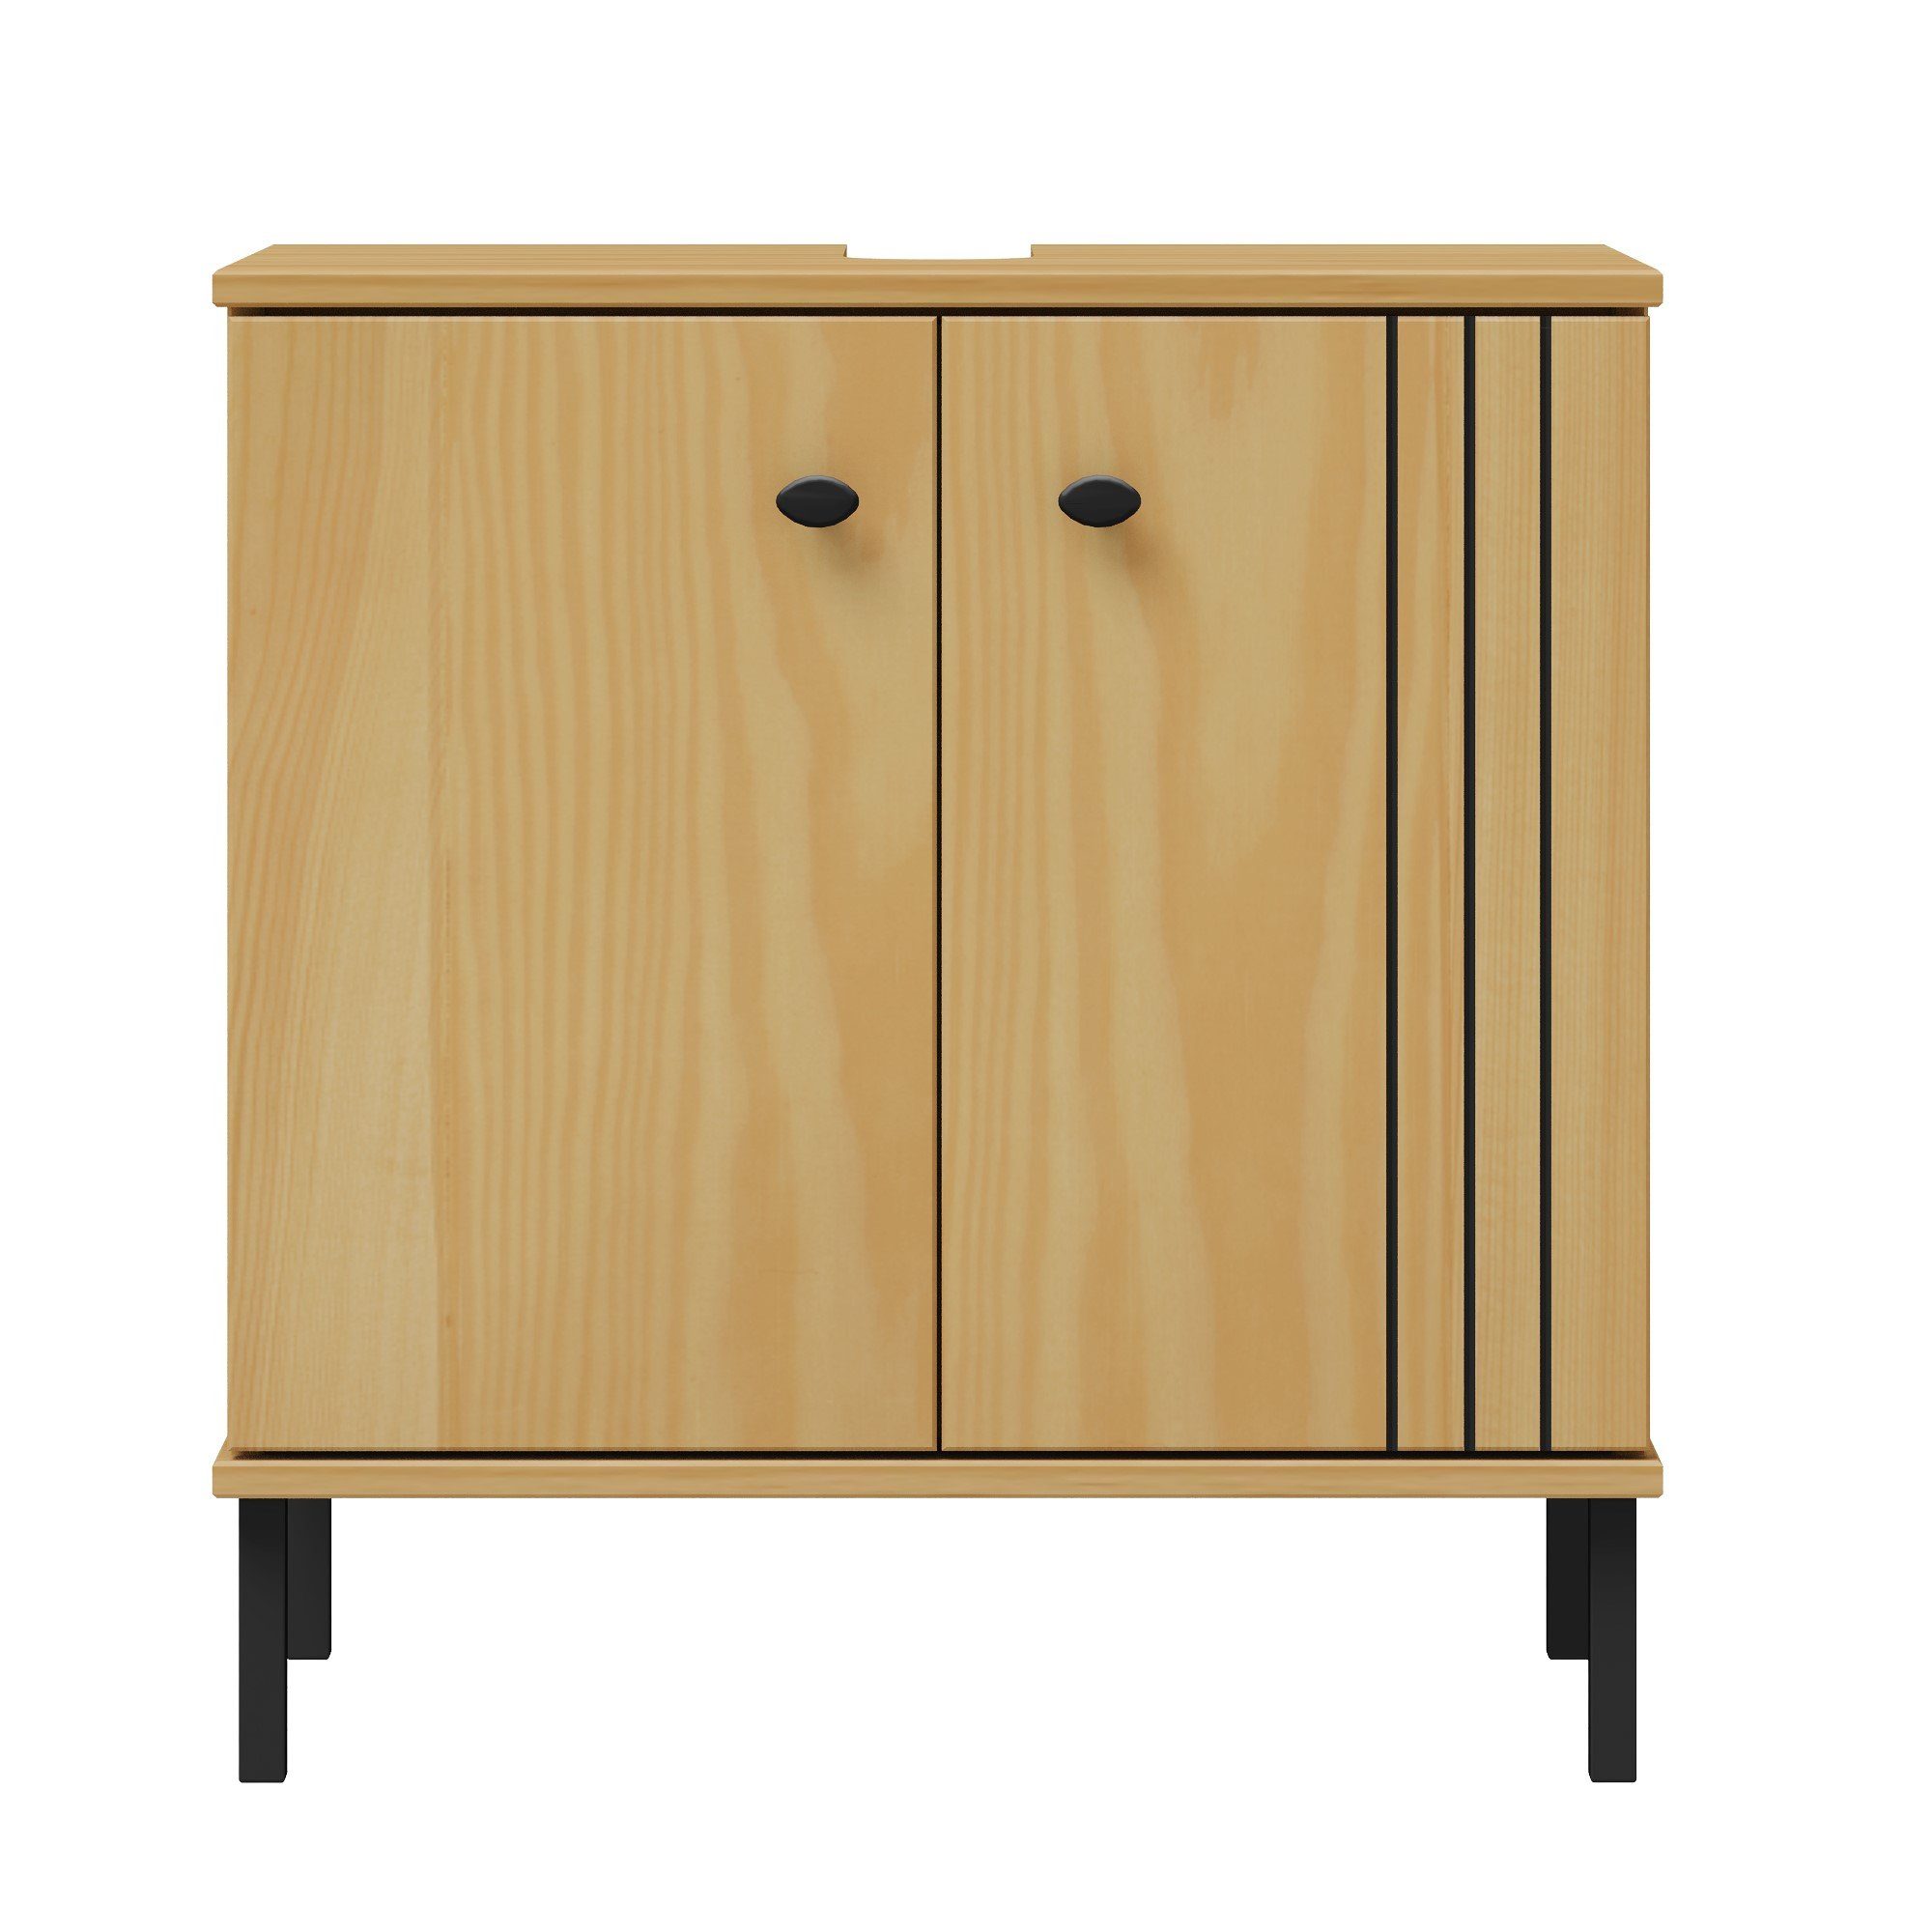 Woodroom Waschbeckenunterschrank Sevilla Kiefer massiv eichefarbig lackiert, BxHxT 62x65x40 cm